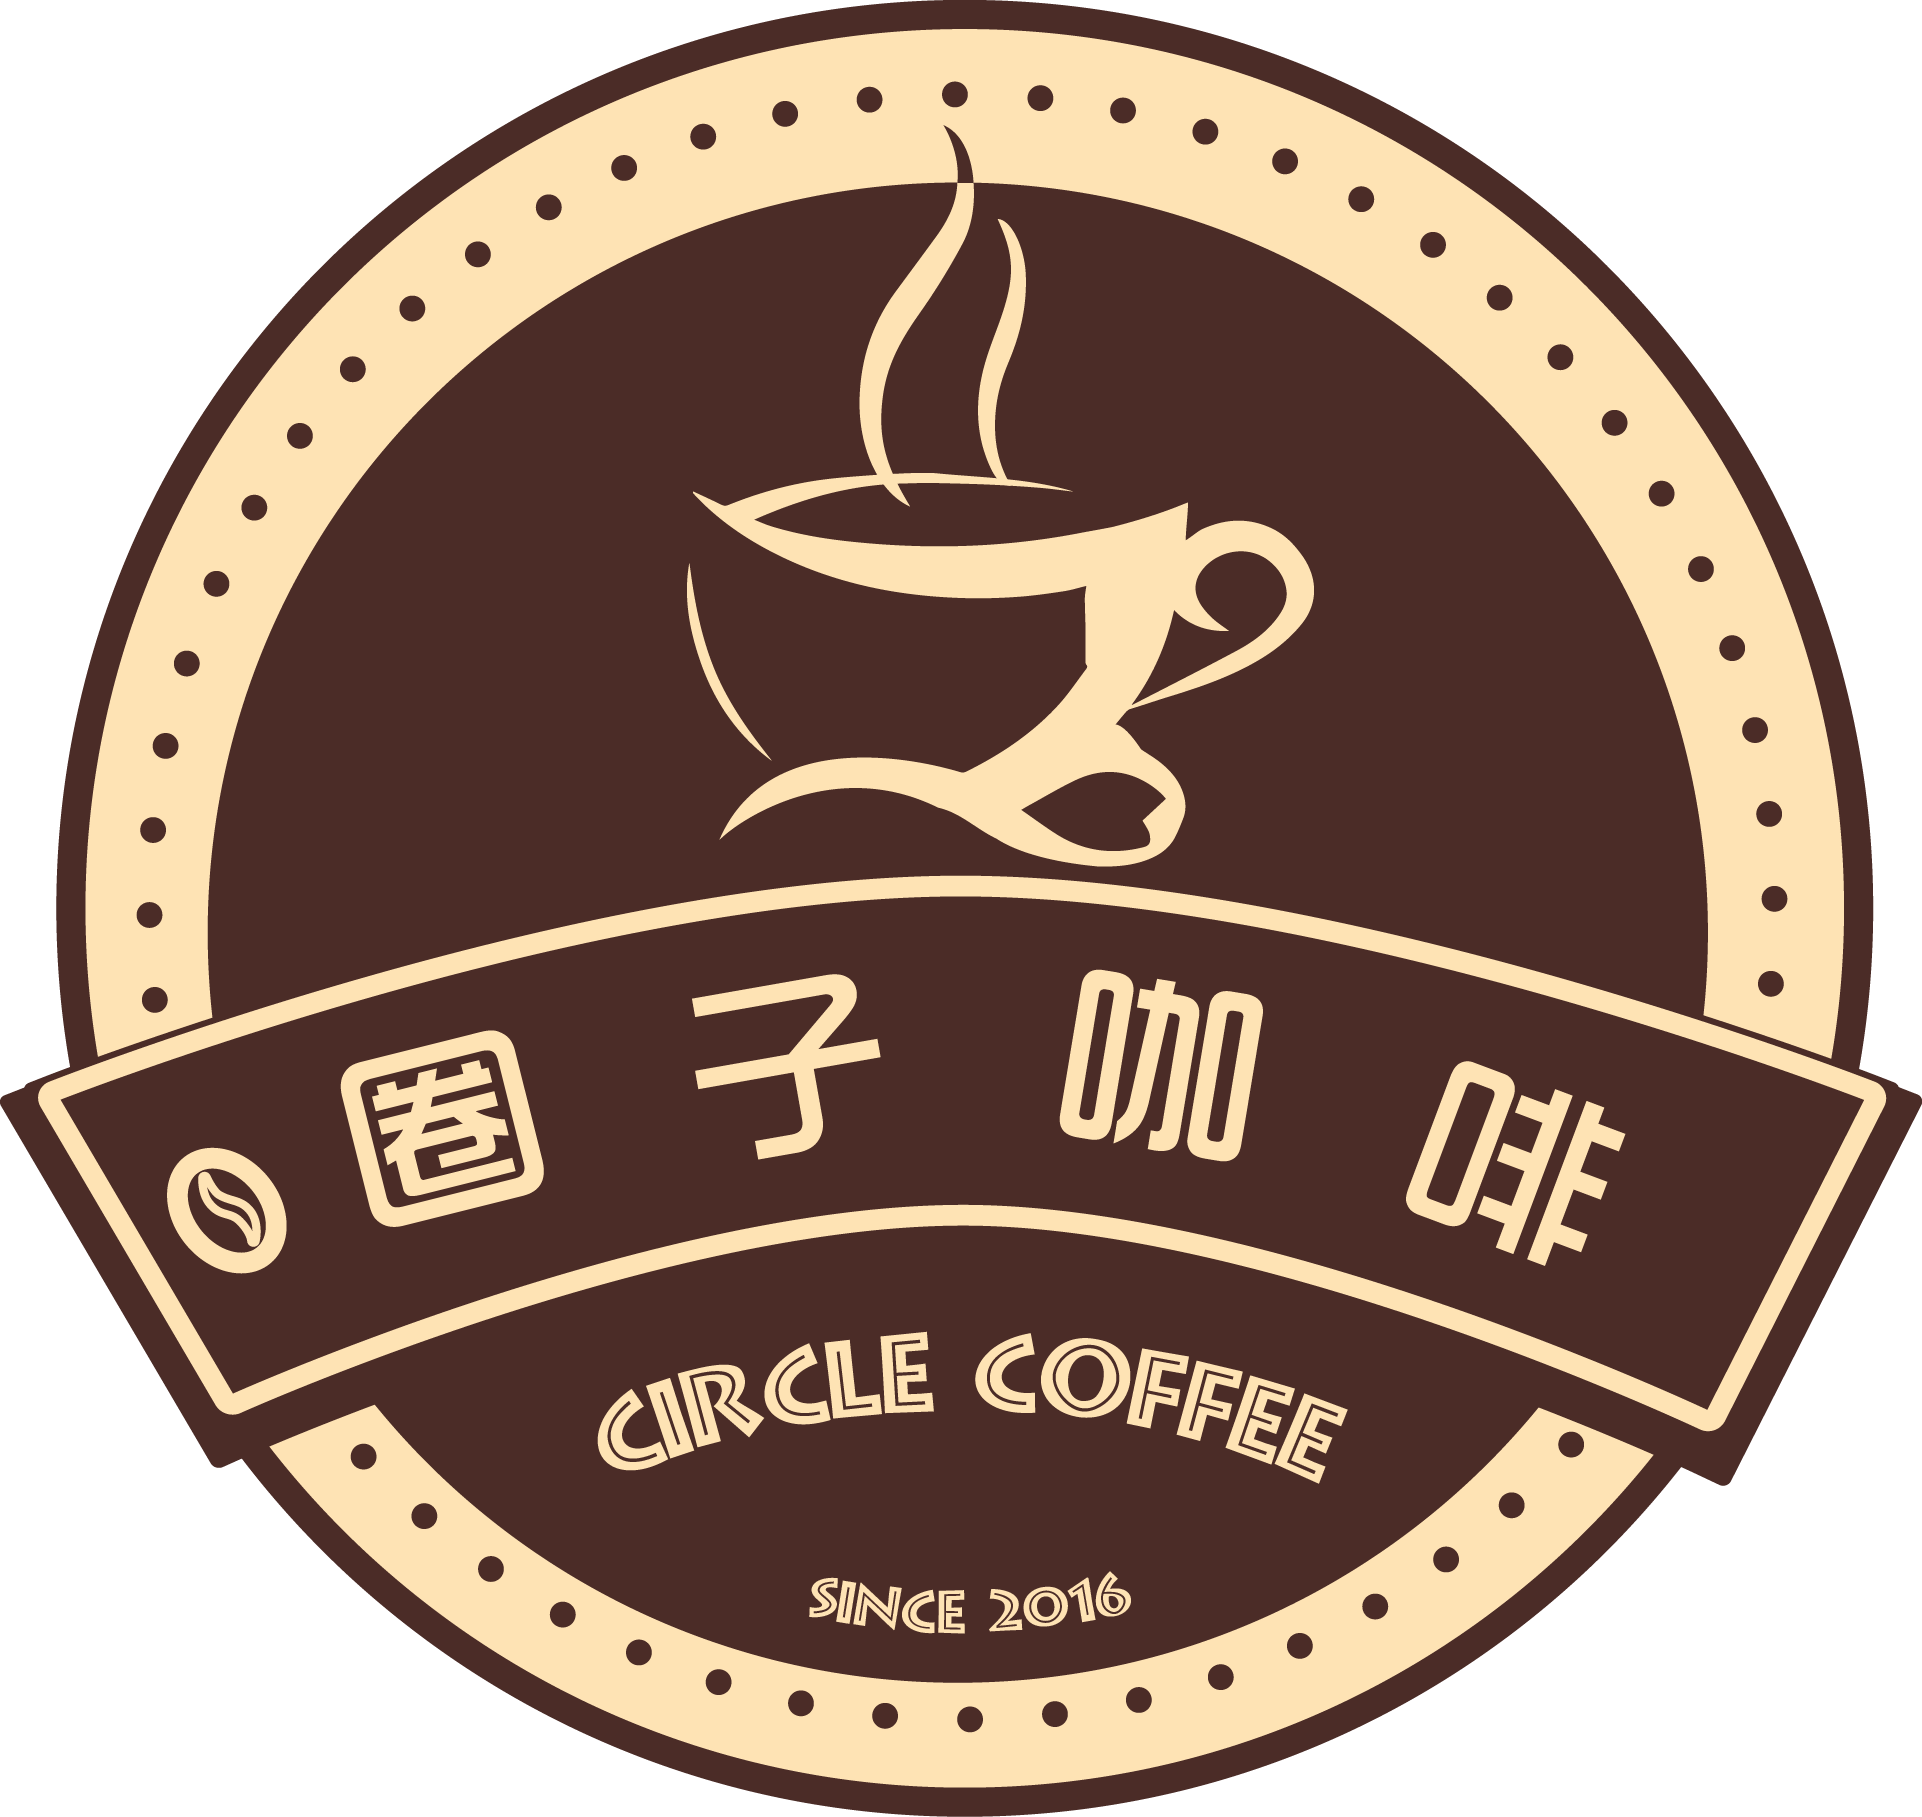 咖啡店logo设计理念图片